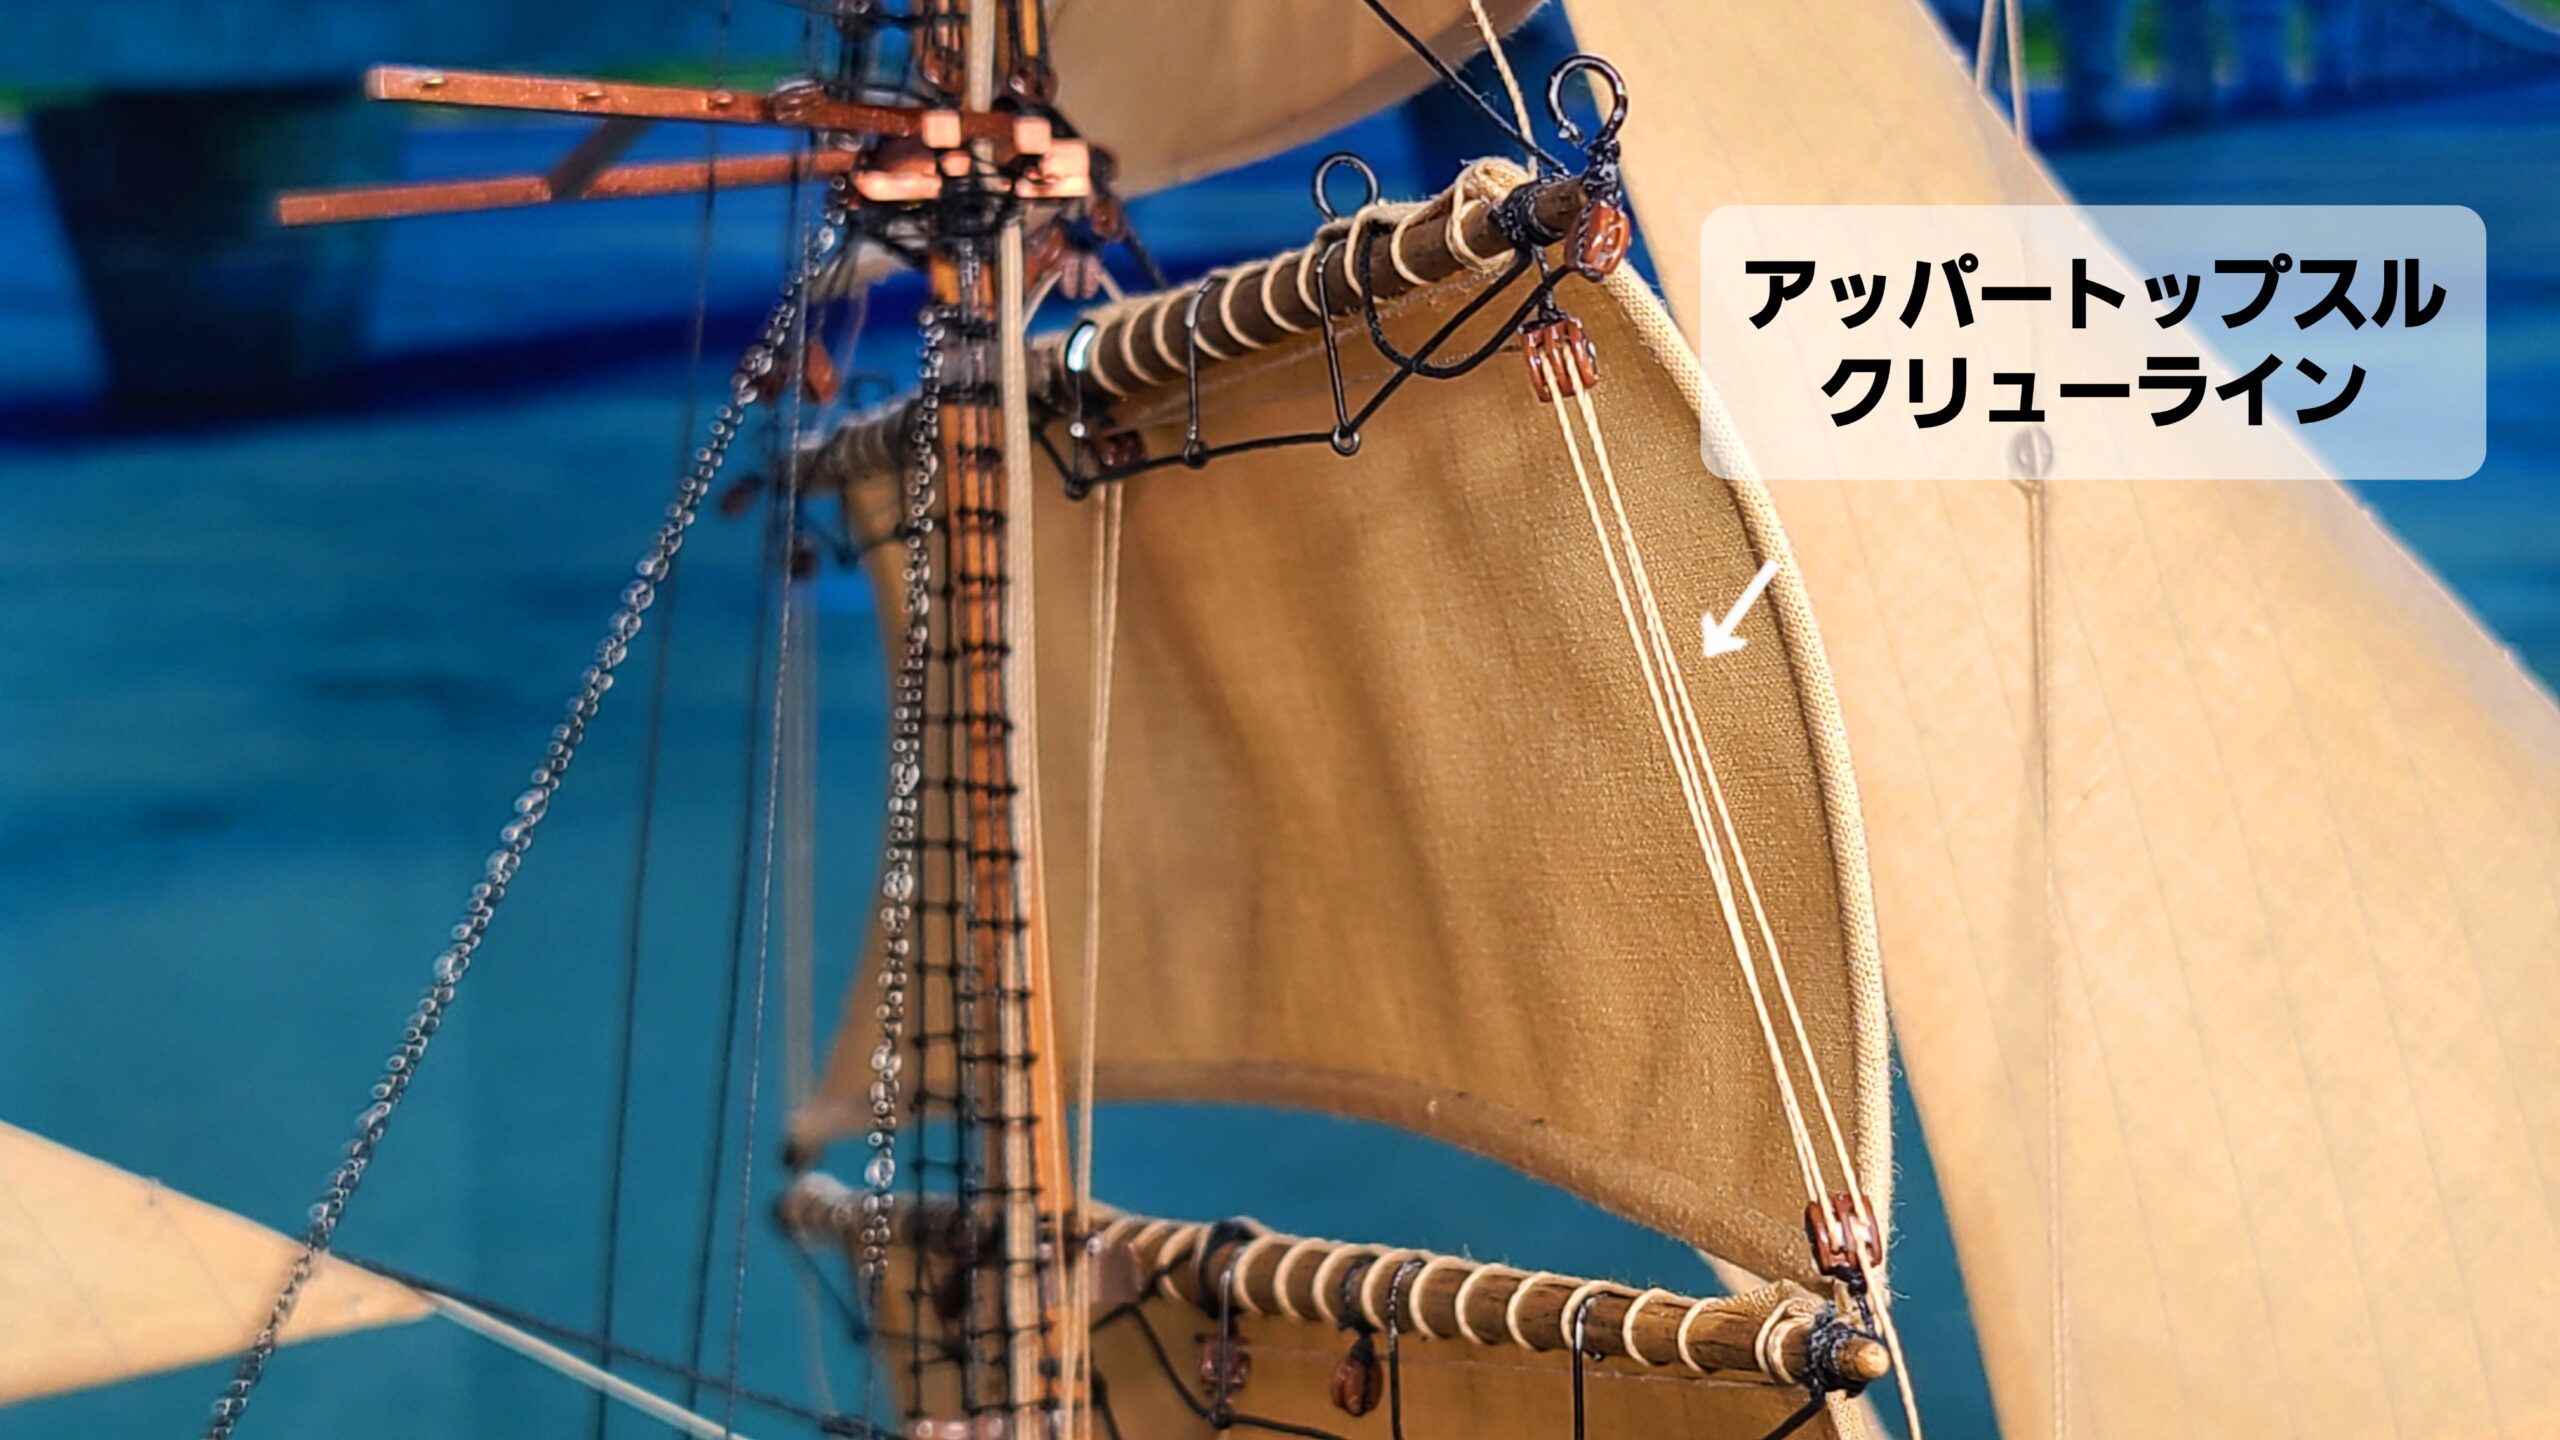 帆船模型 カティサーク アッパートップスル クリューラインの張り方